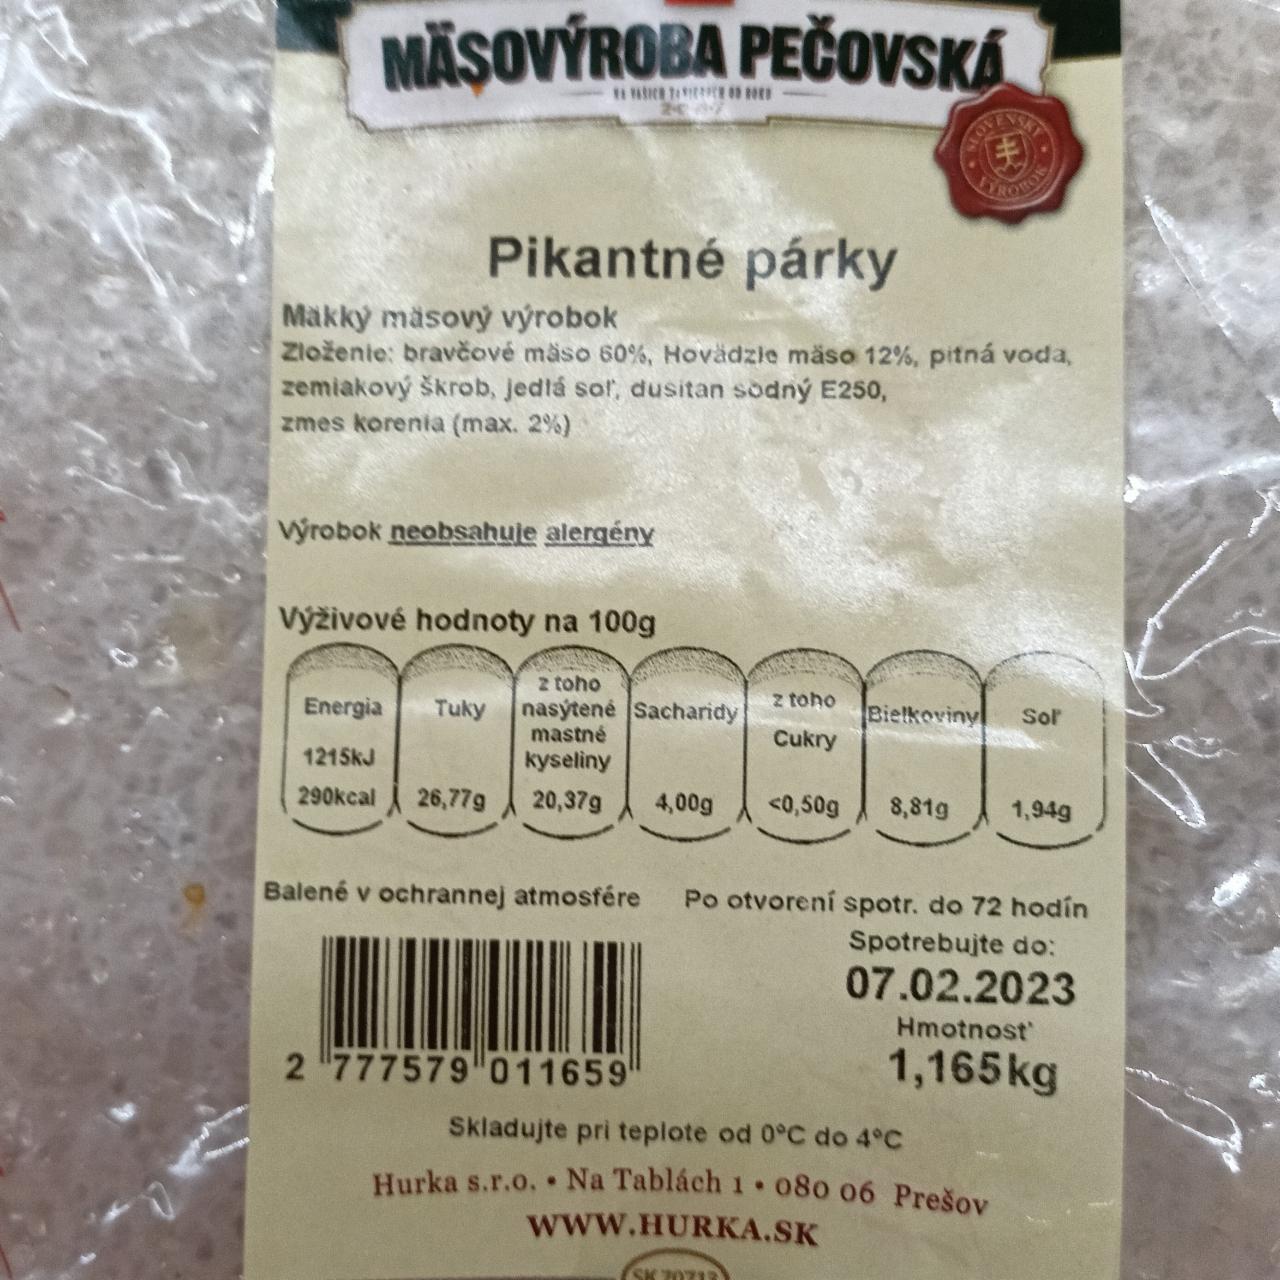 Fotografie - Pikantné párky Mäsovýroba Pečovská